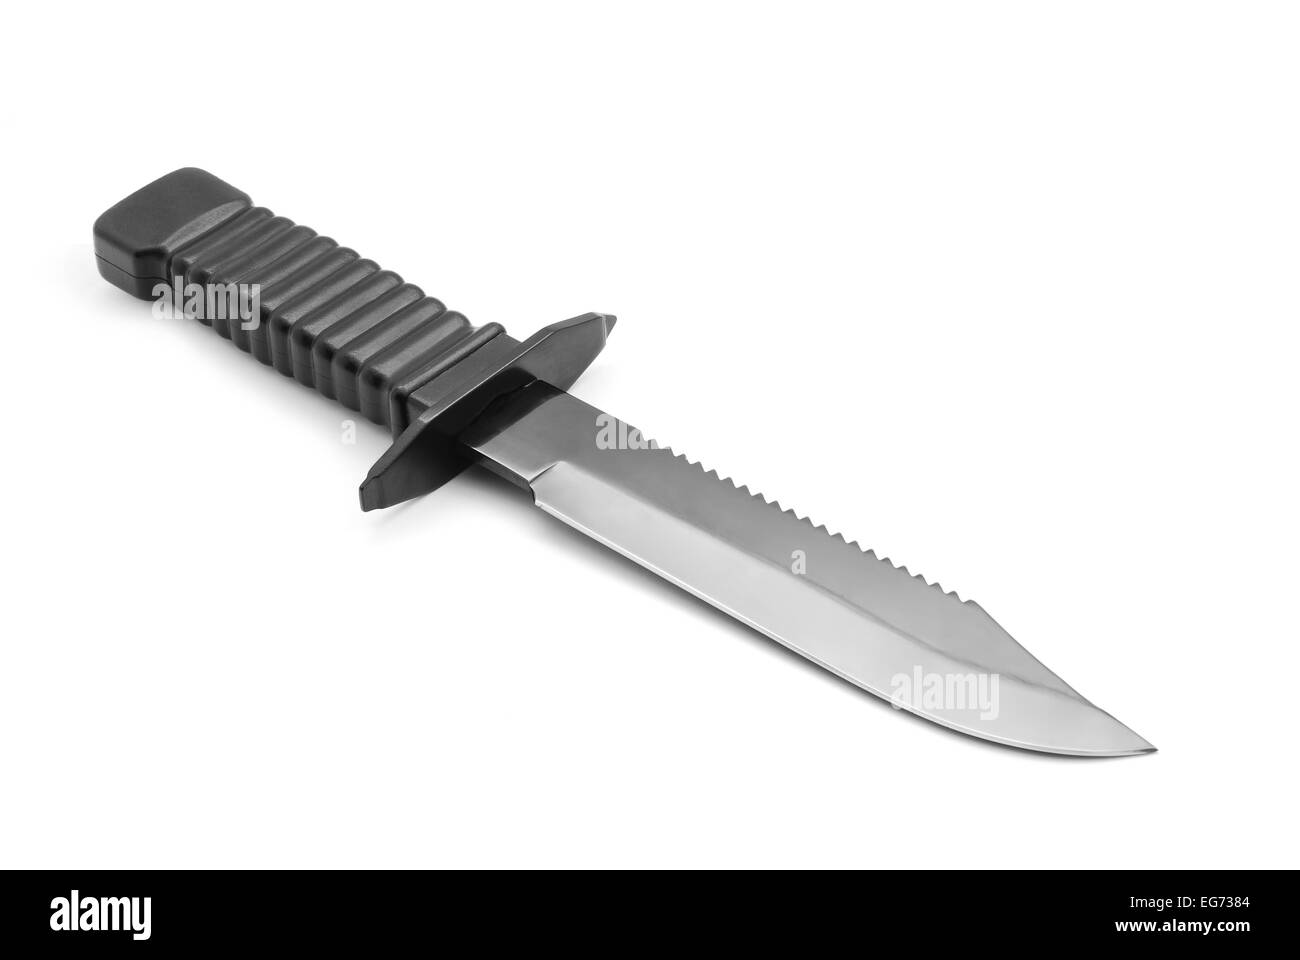 Cuchillo militar vector premium